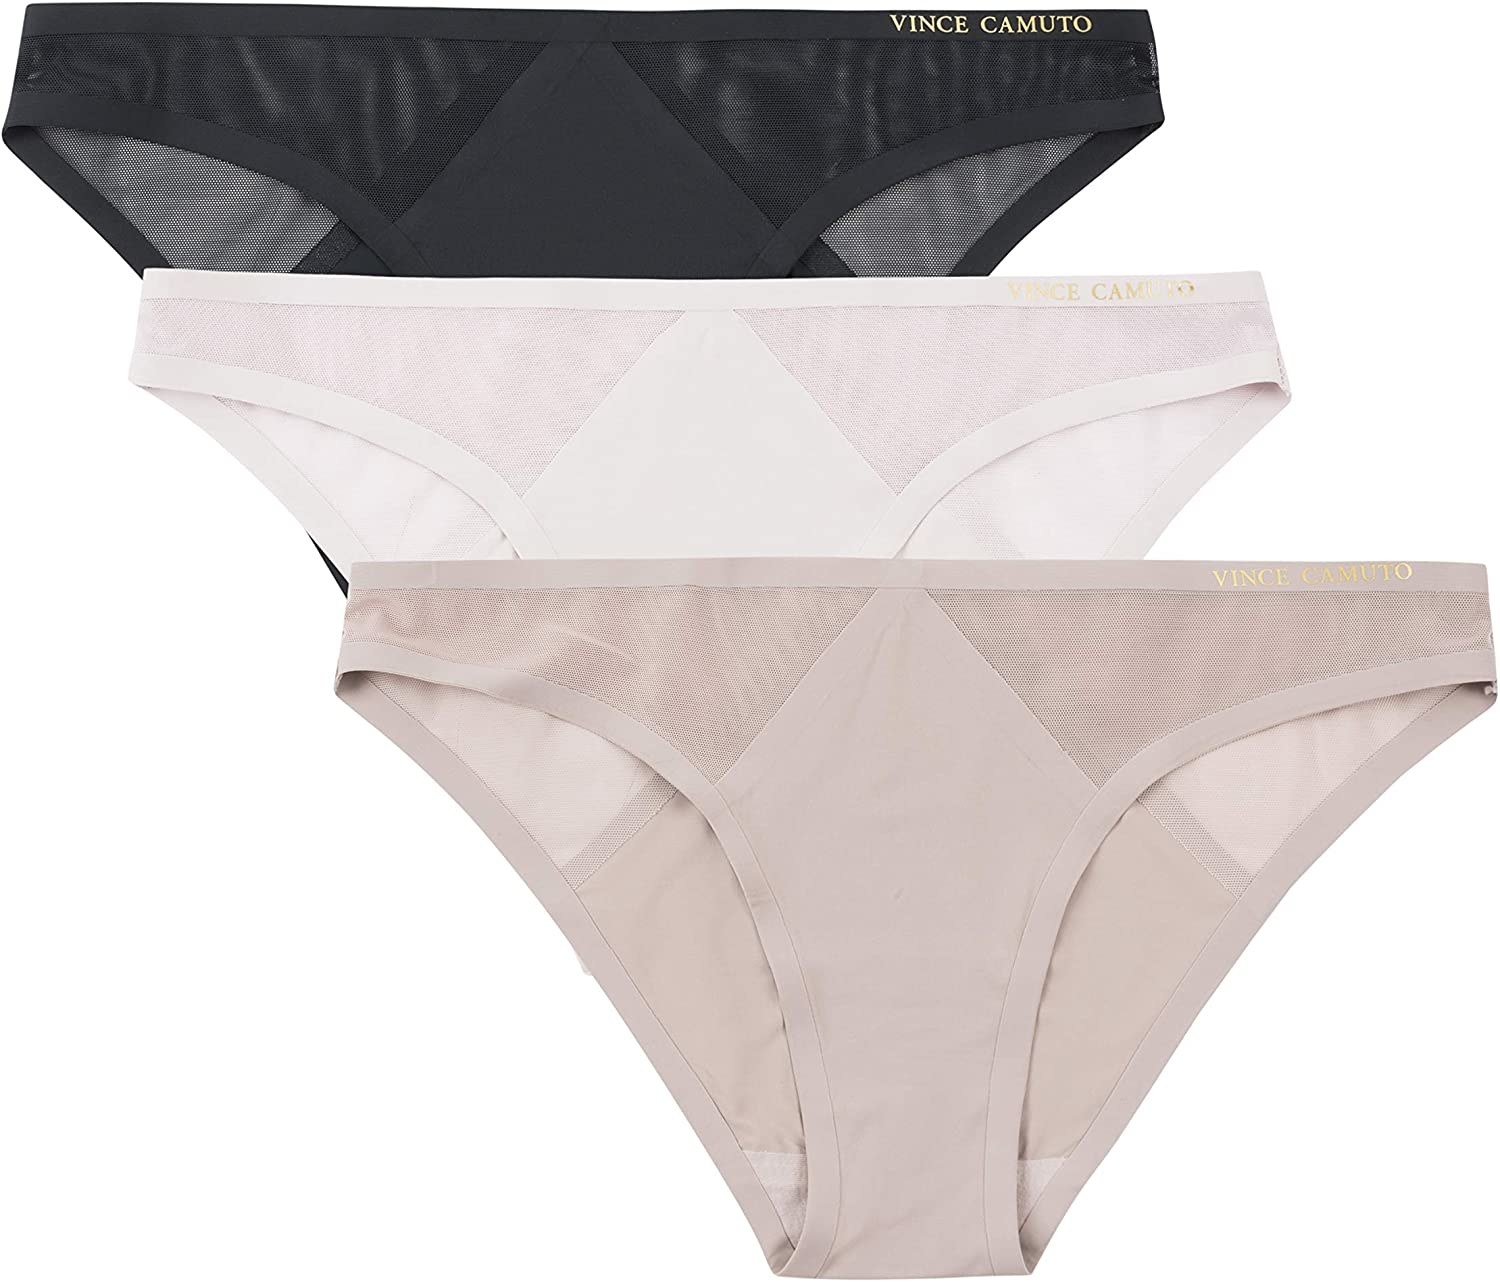 19 Best Pairs Of No-Show Underwear To Combat VPL 2022